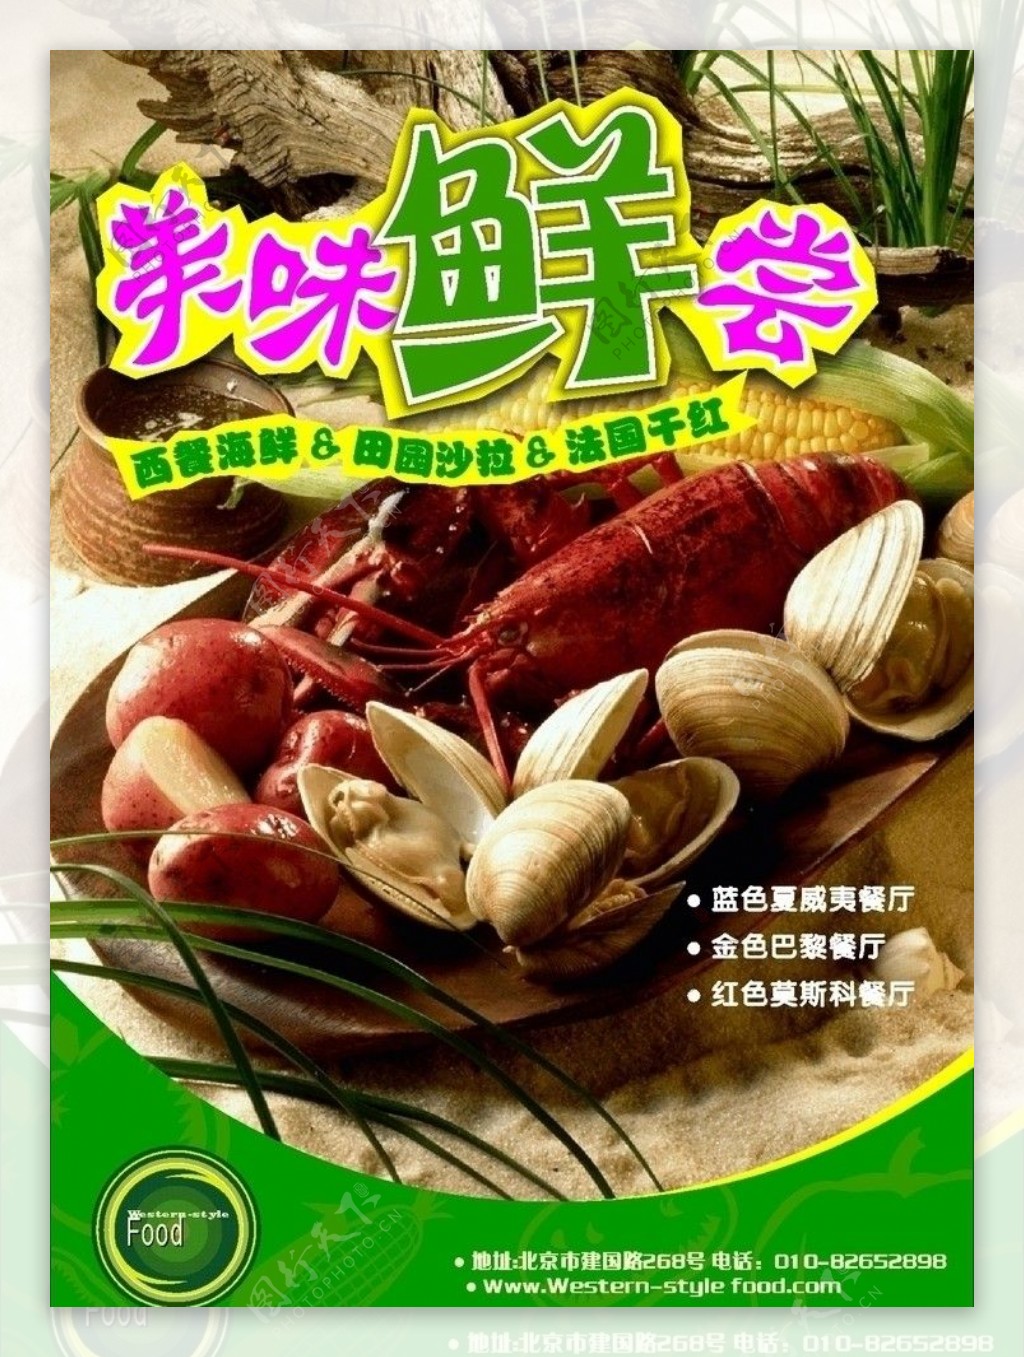 西餐海鲜田园沙拉法国干红宣传单图片